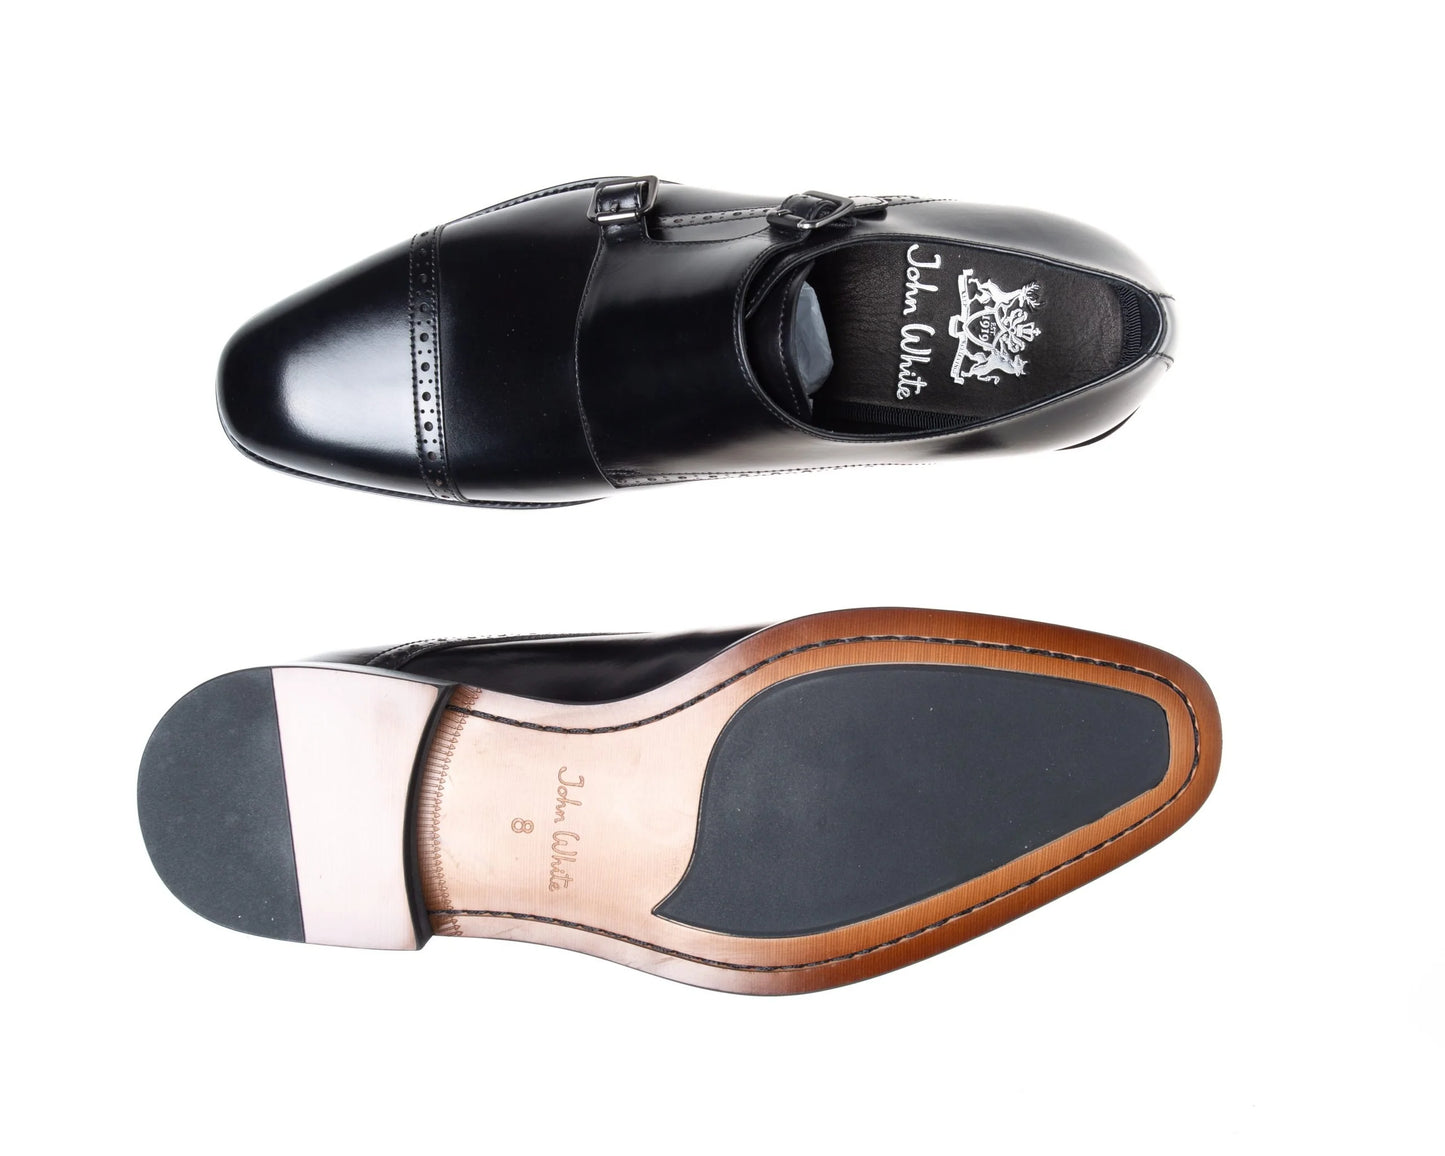 Alderney Double Monk Strap Shoes (Black)